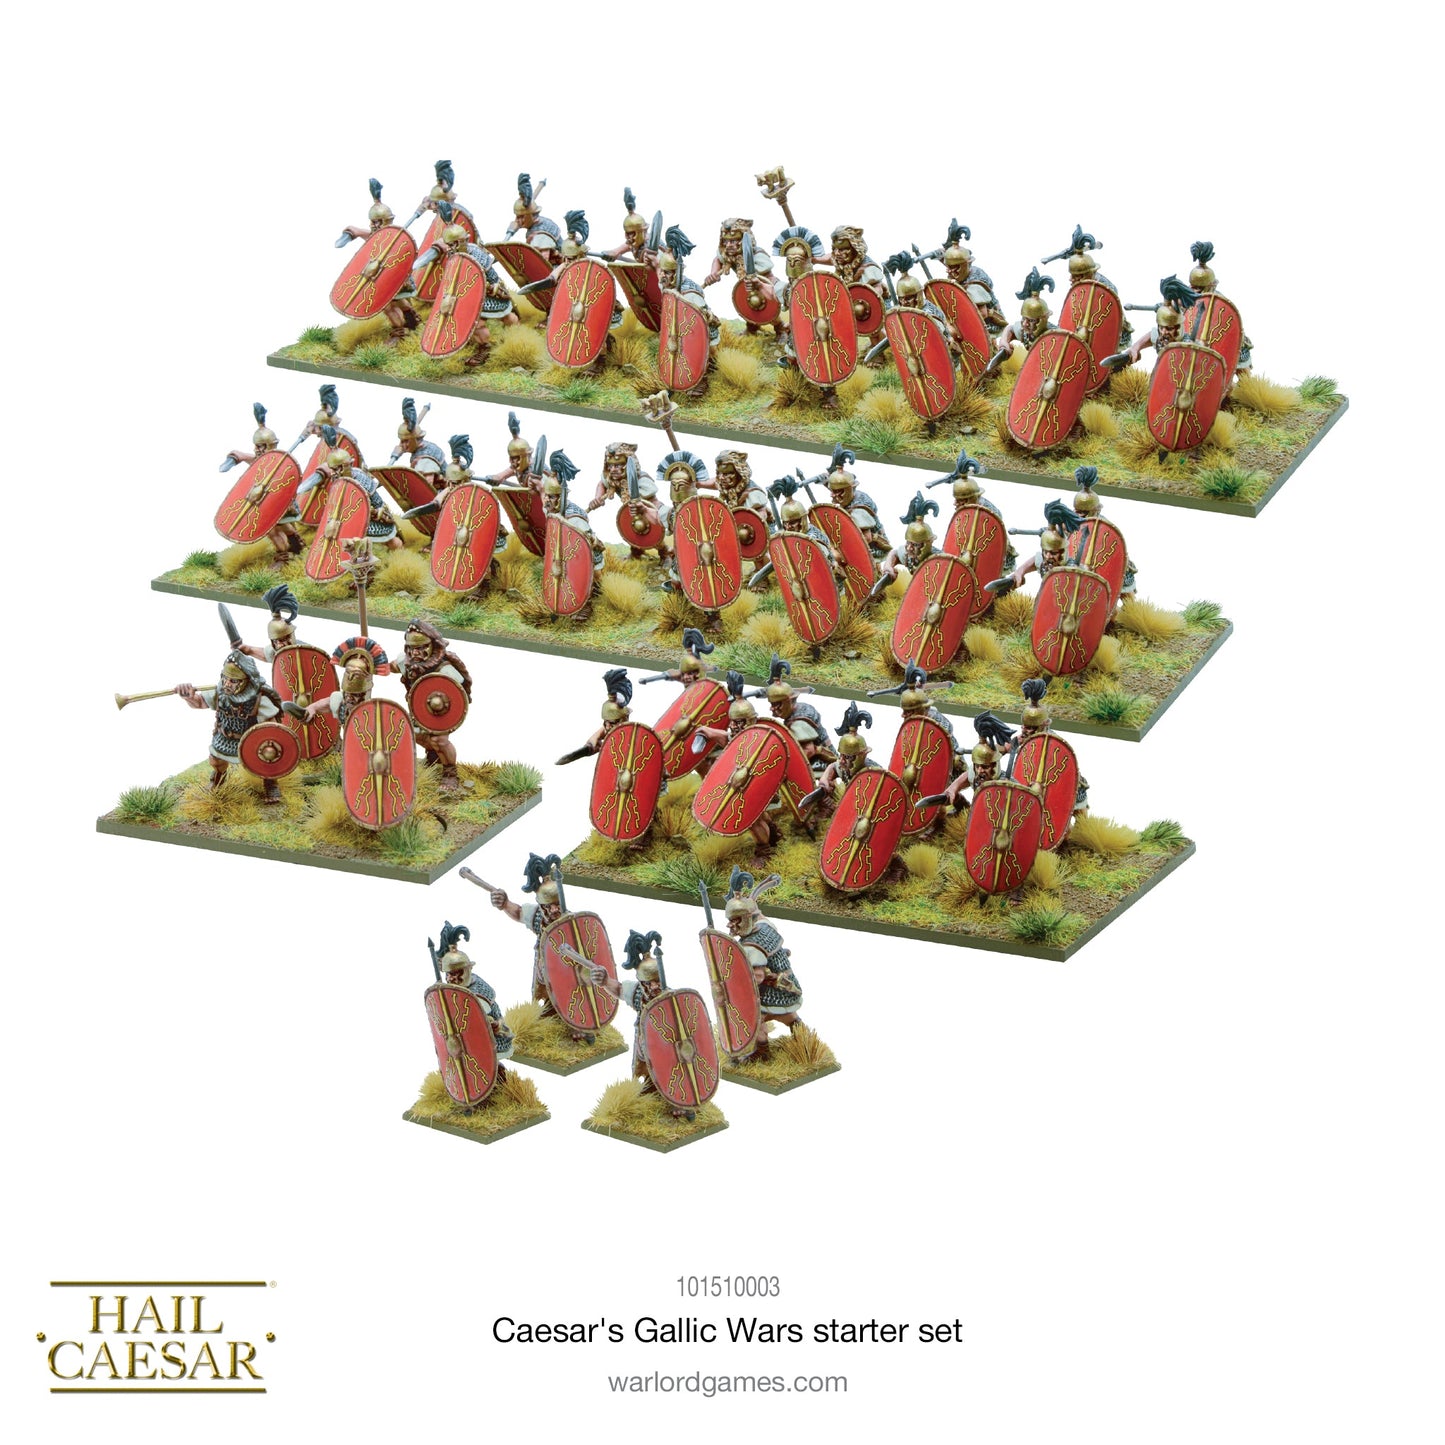 Hail Caesar: Caesar's Gallic Wars - Hail Caesar Starter Set